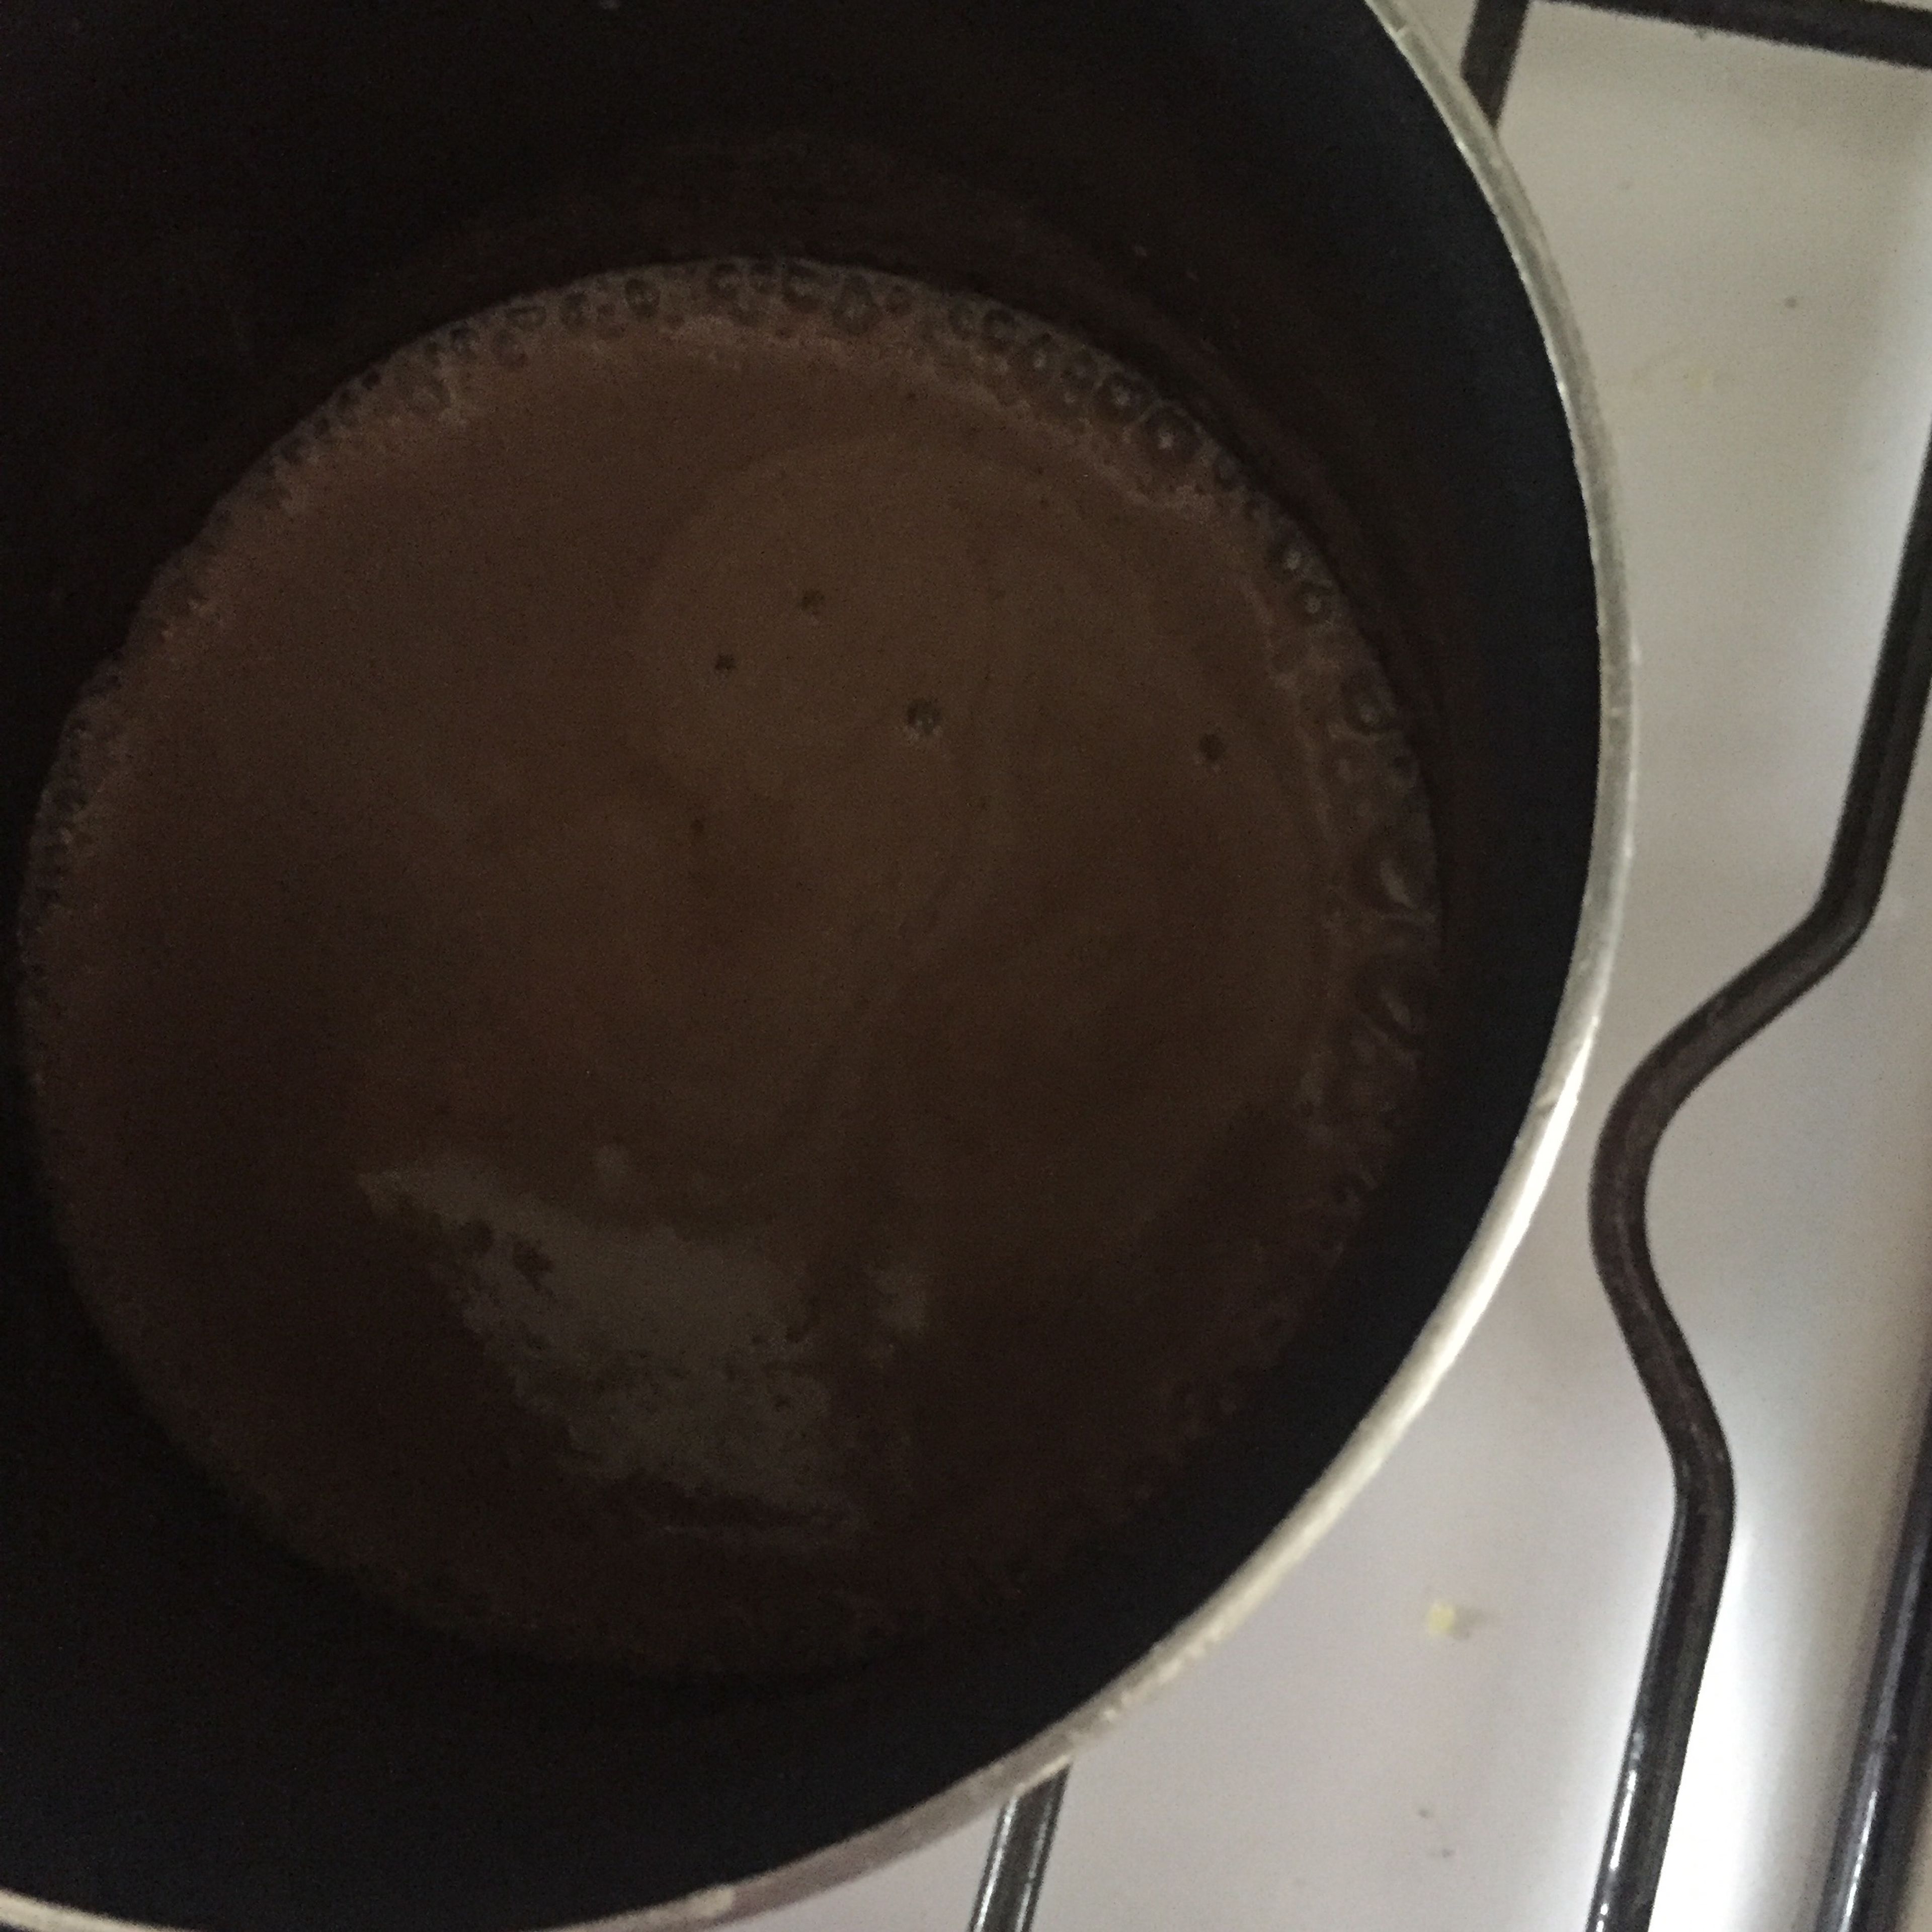 pour milk, and stir. Pour into a pot and heat until it boils. Keep stirring until it thickens a little bit.